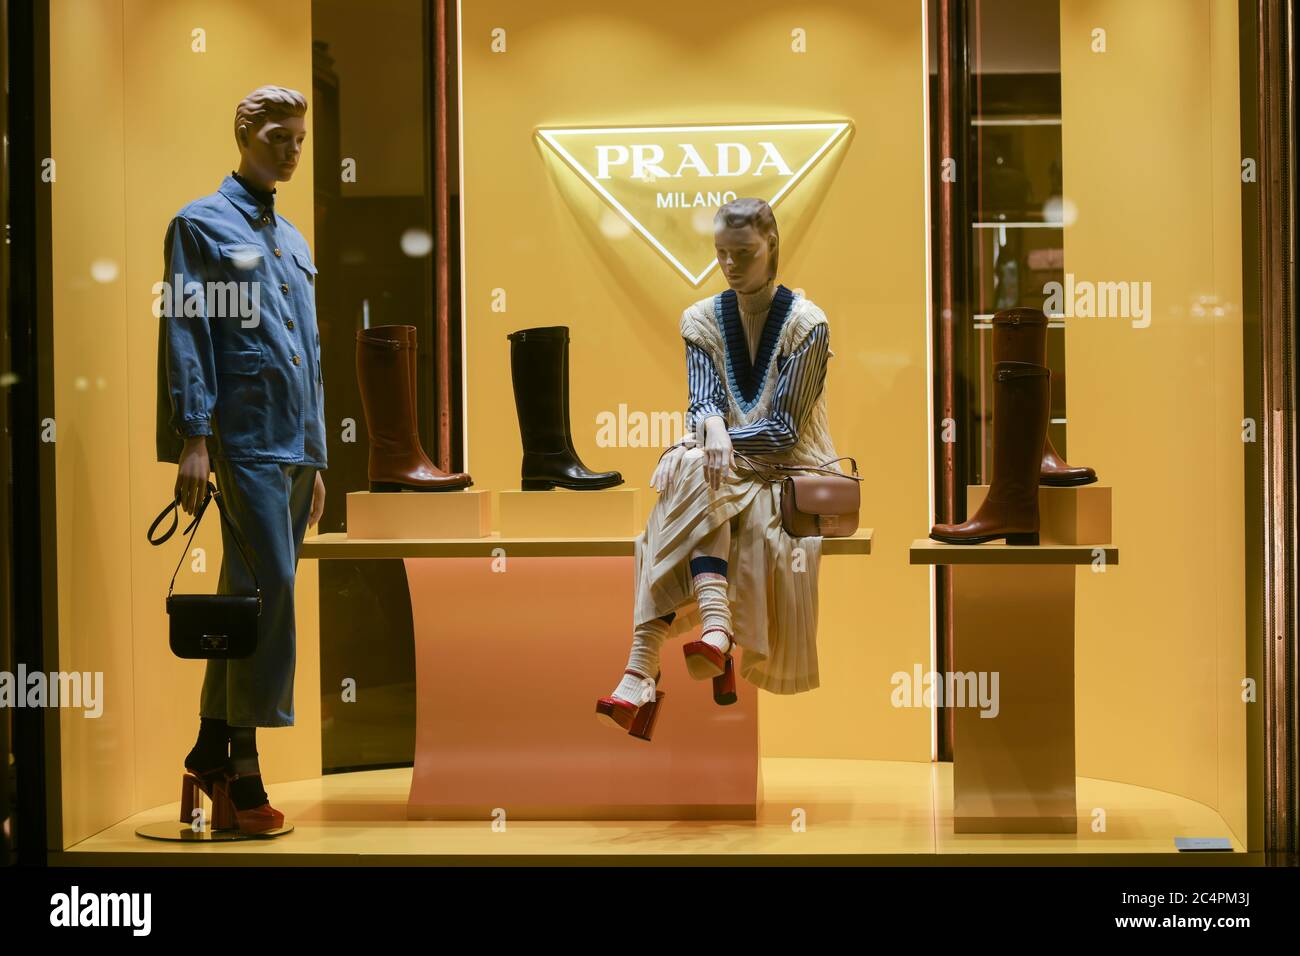 Milan, Italie - 13 janvier 2020 : vitrine de vêtements, bottes, chaussures et porte-monnaie Prada Banque D'Images